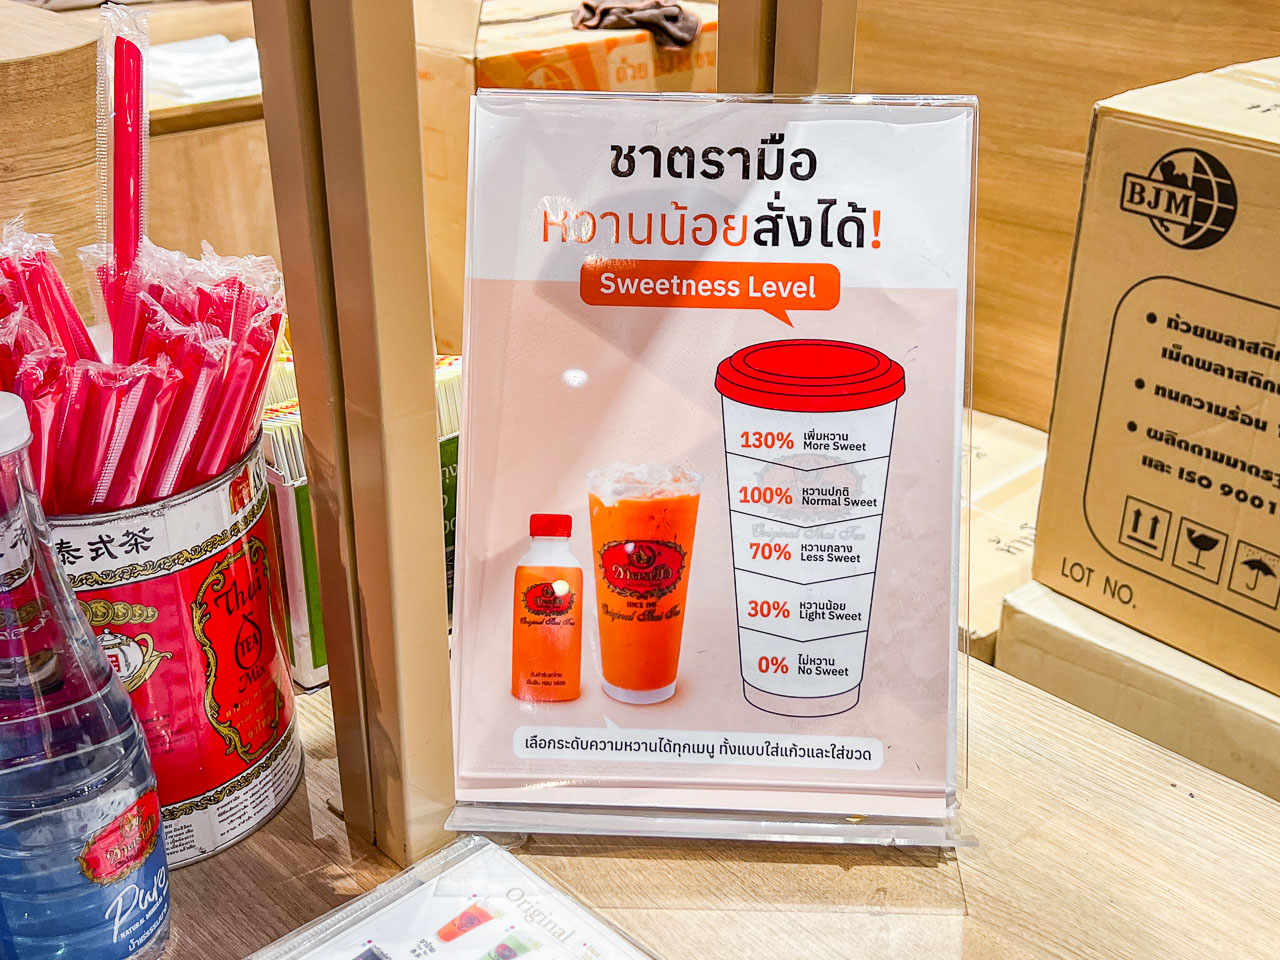 泰國奶茶推薦,泰國泰式奶茶,曼谷泰式奶茶,曼谷美食,曼谷飲料,ChaTraMue 手標茶,曼谷中央世界購物商場美食